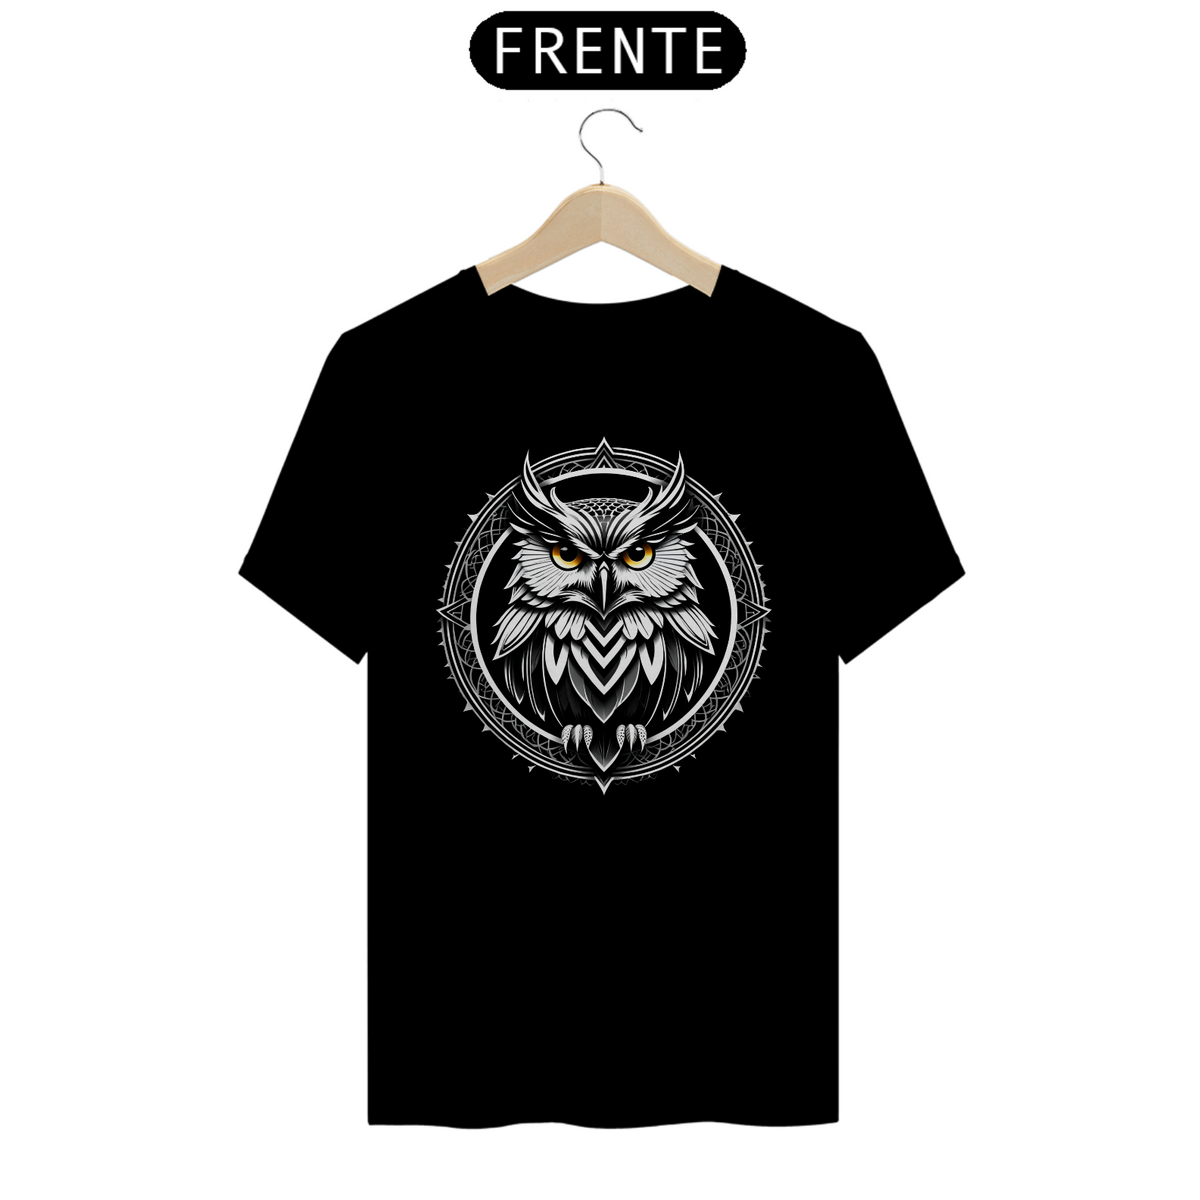 Nome do produto: Camiseta Spirit Owl - Espírito da Coruja